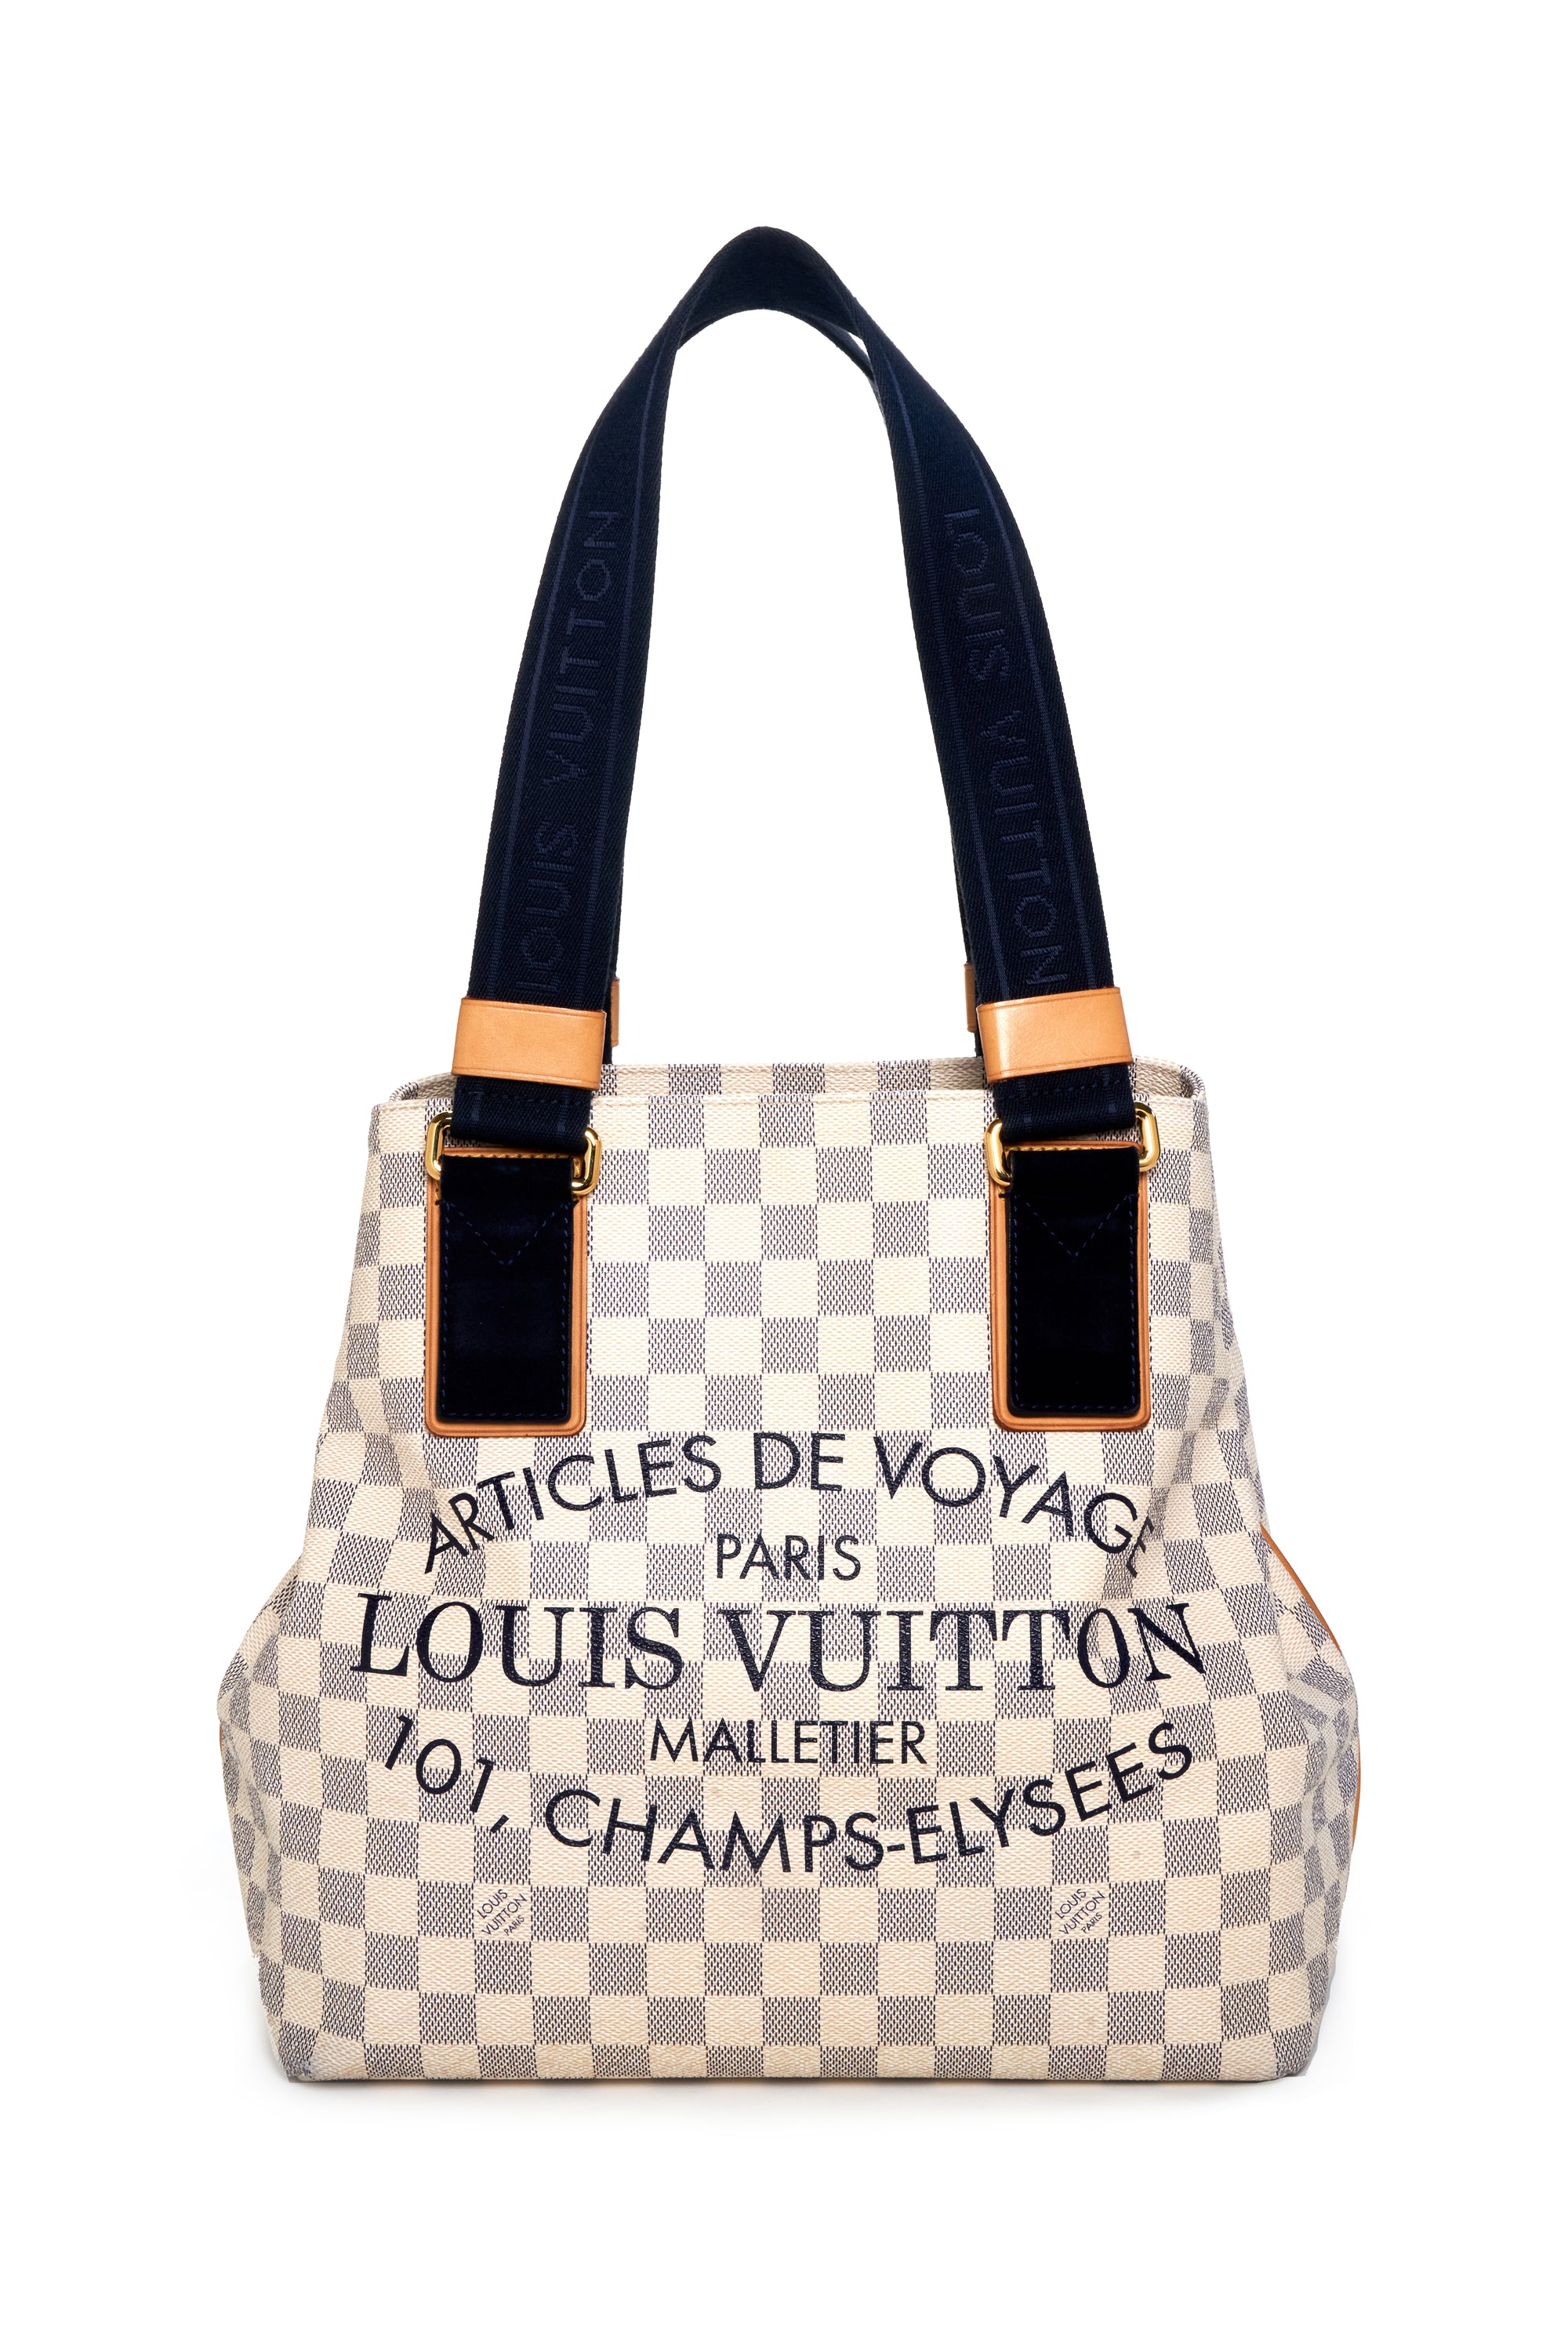 Louis Vuitton "Articles de Voyage" Damier Azure Tote